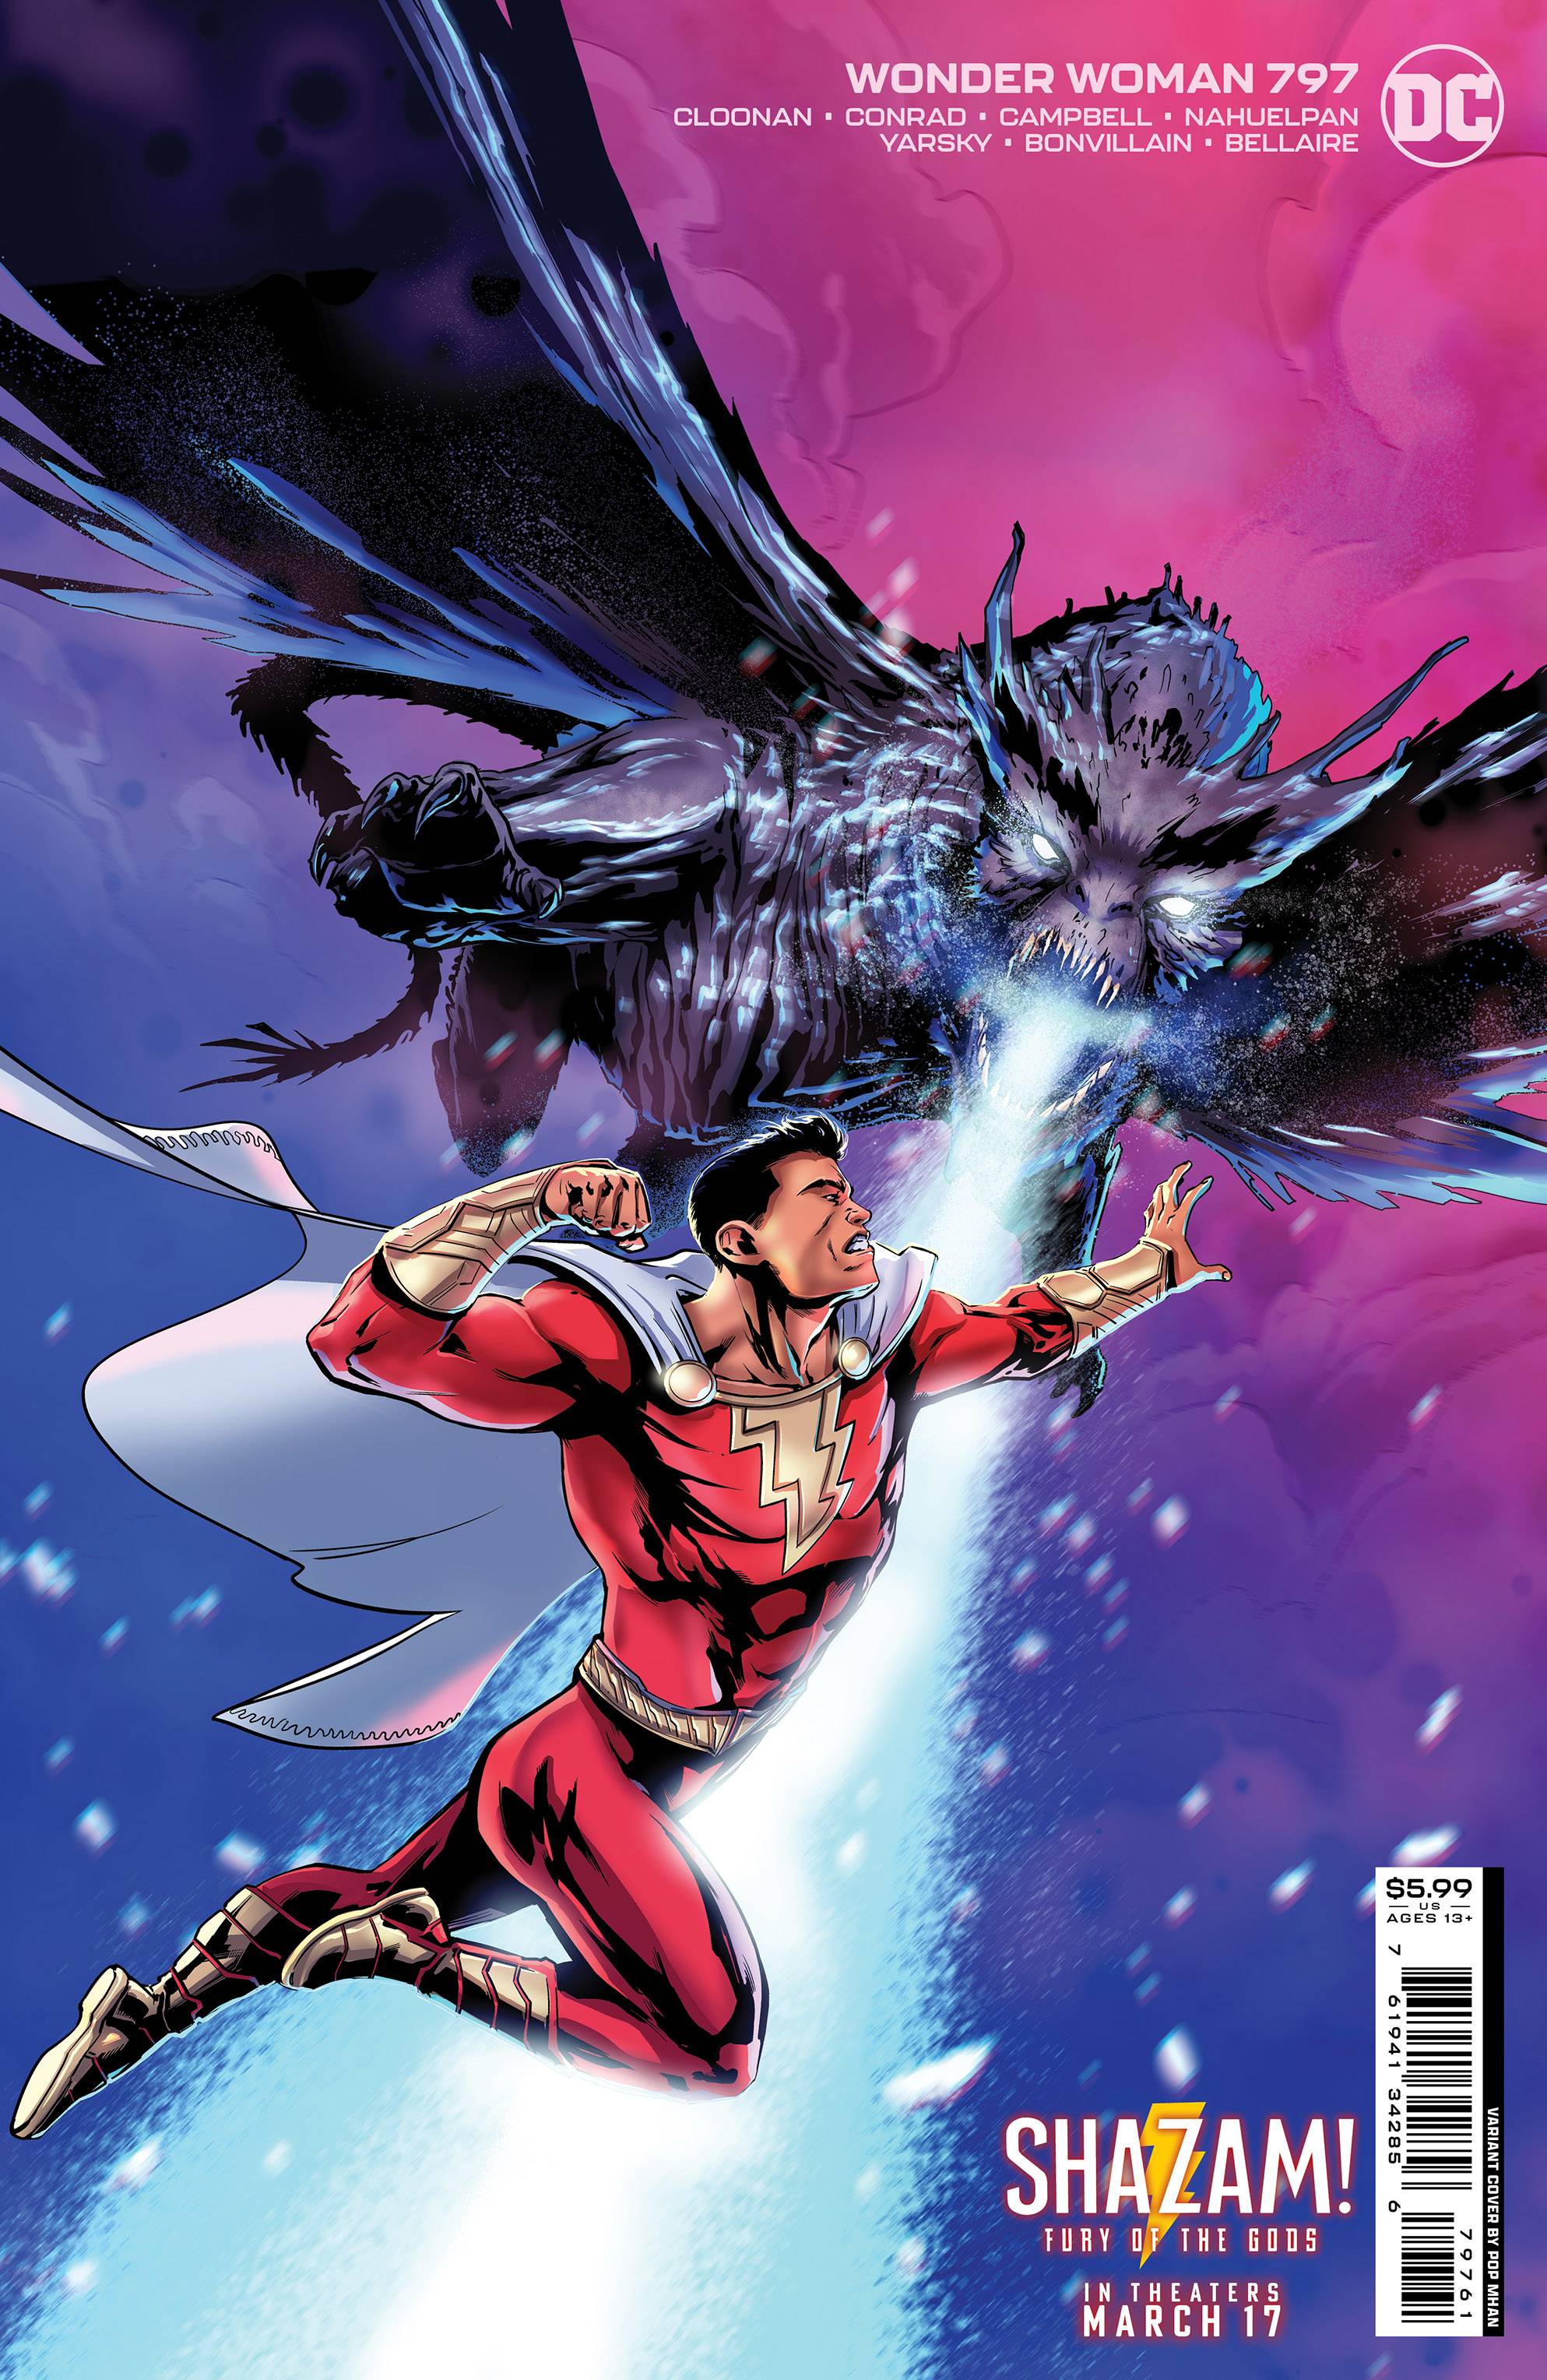 DC Multiverse Shazam! Fury of the Gods Wonder Woman Action Figure